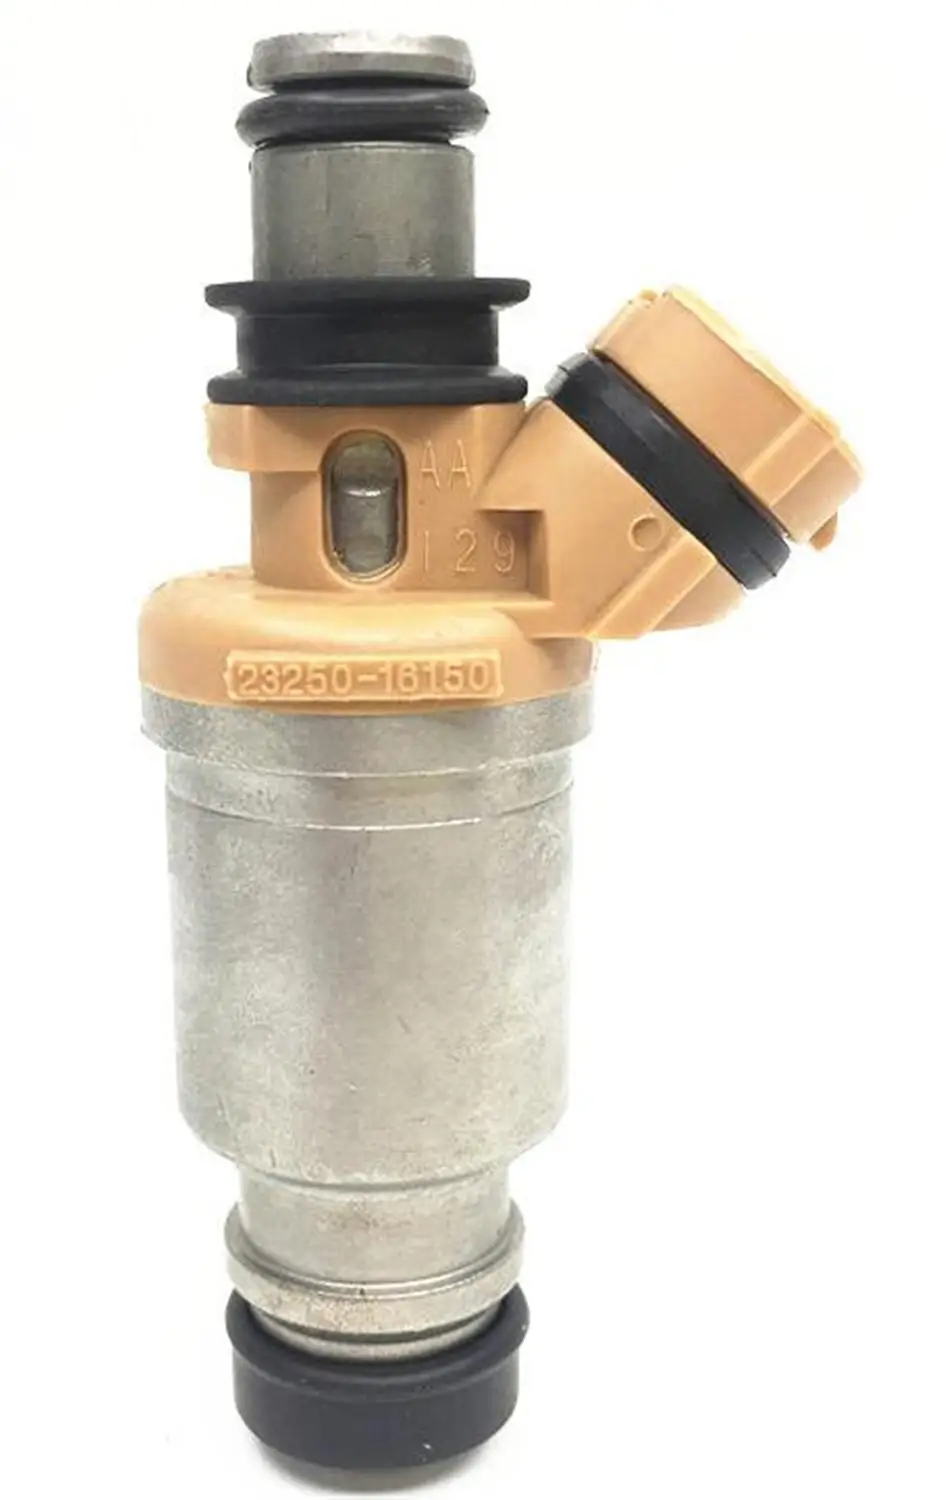 

4pcs Original Fuel Injectors 23250-16150 23209-16150 Automobile Fuel Nozzles Suitable for Toyota Corolla Cars